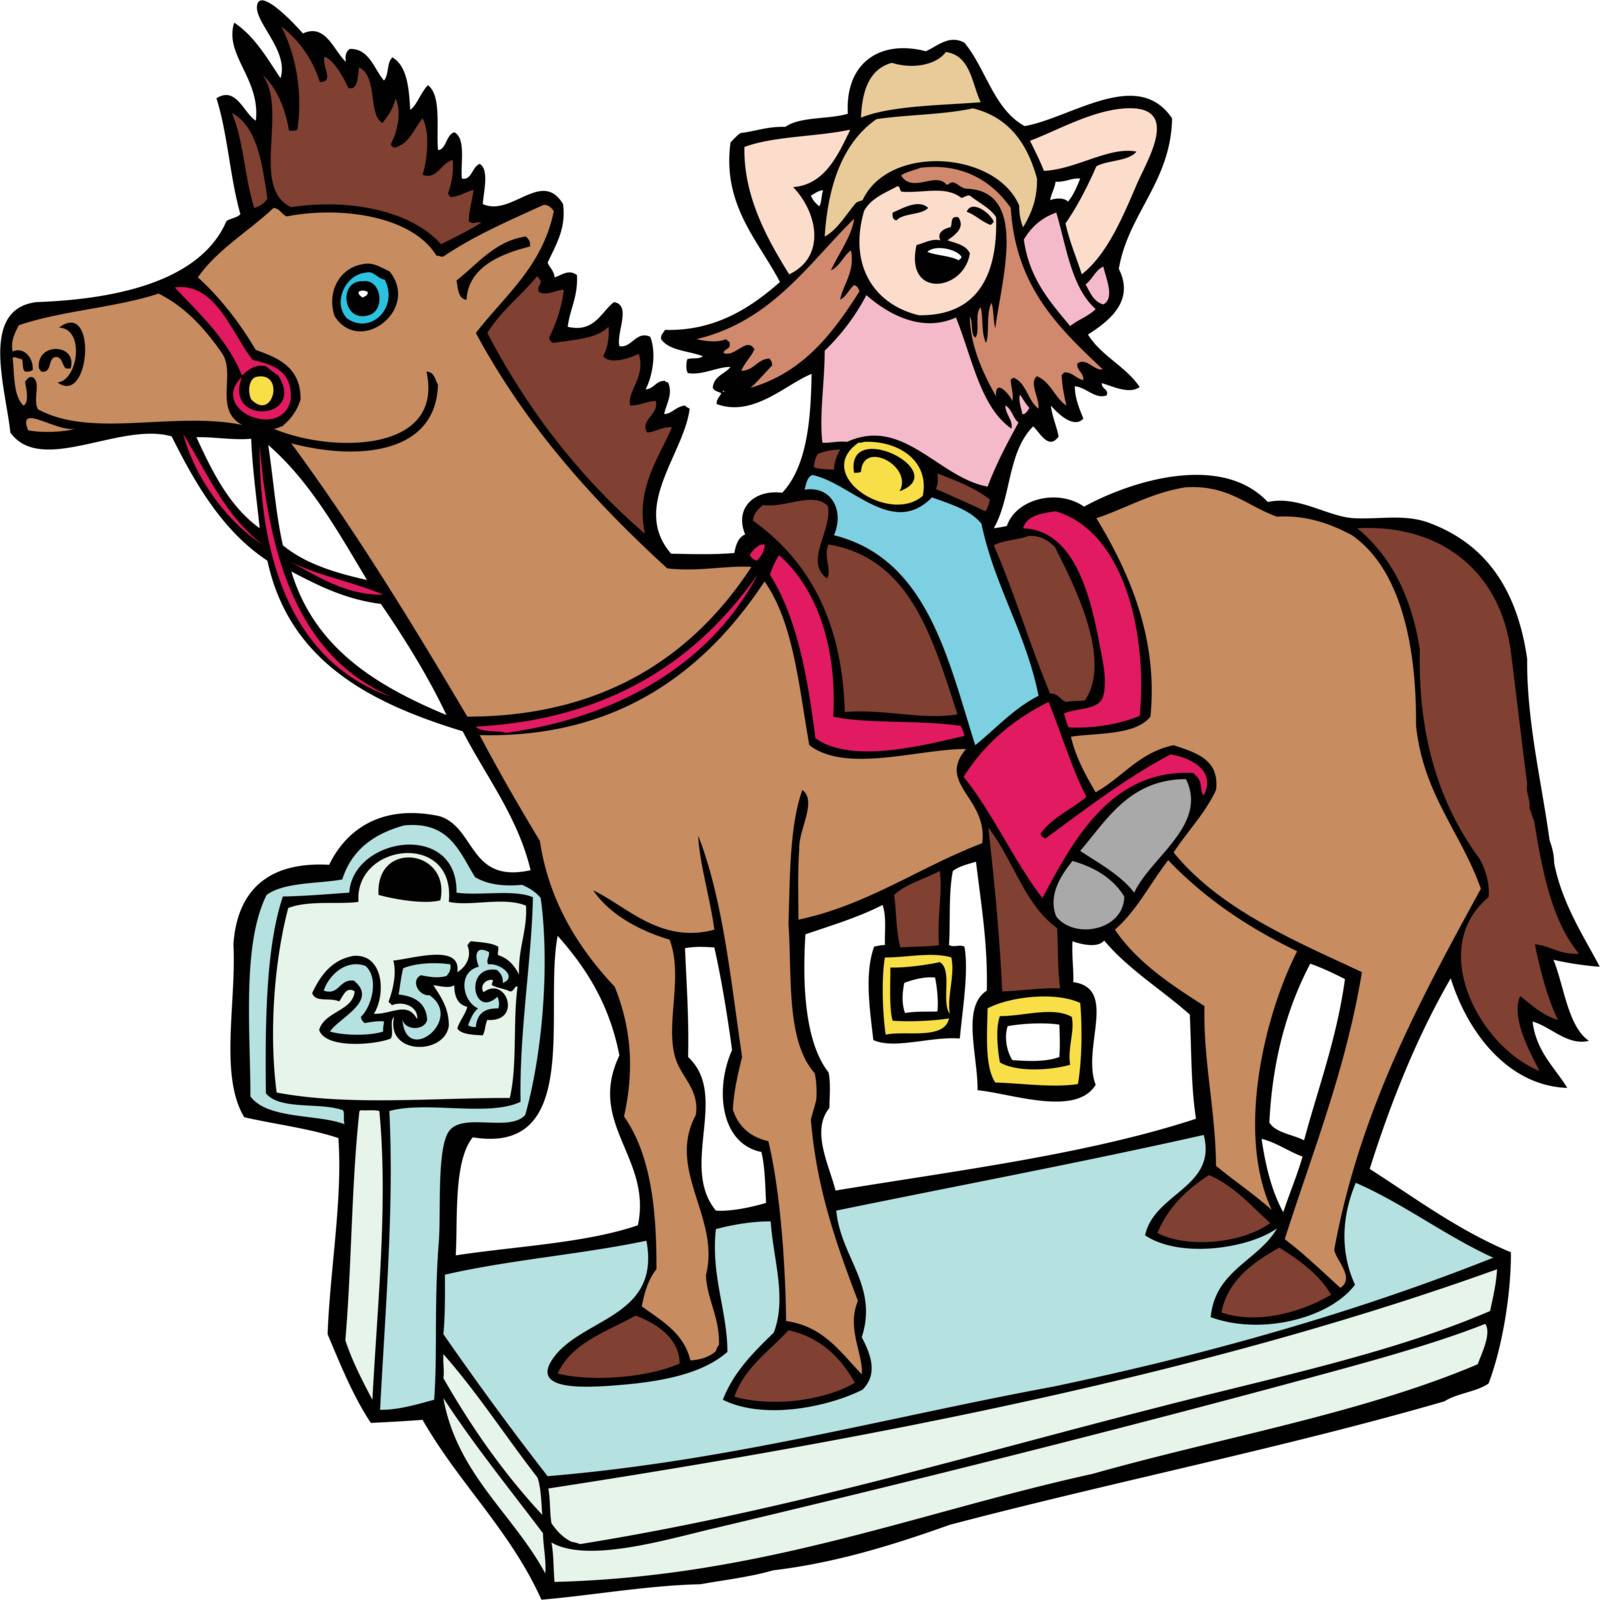 A girl has fun riding a mechanical horse.